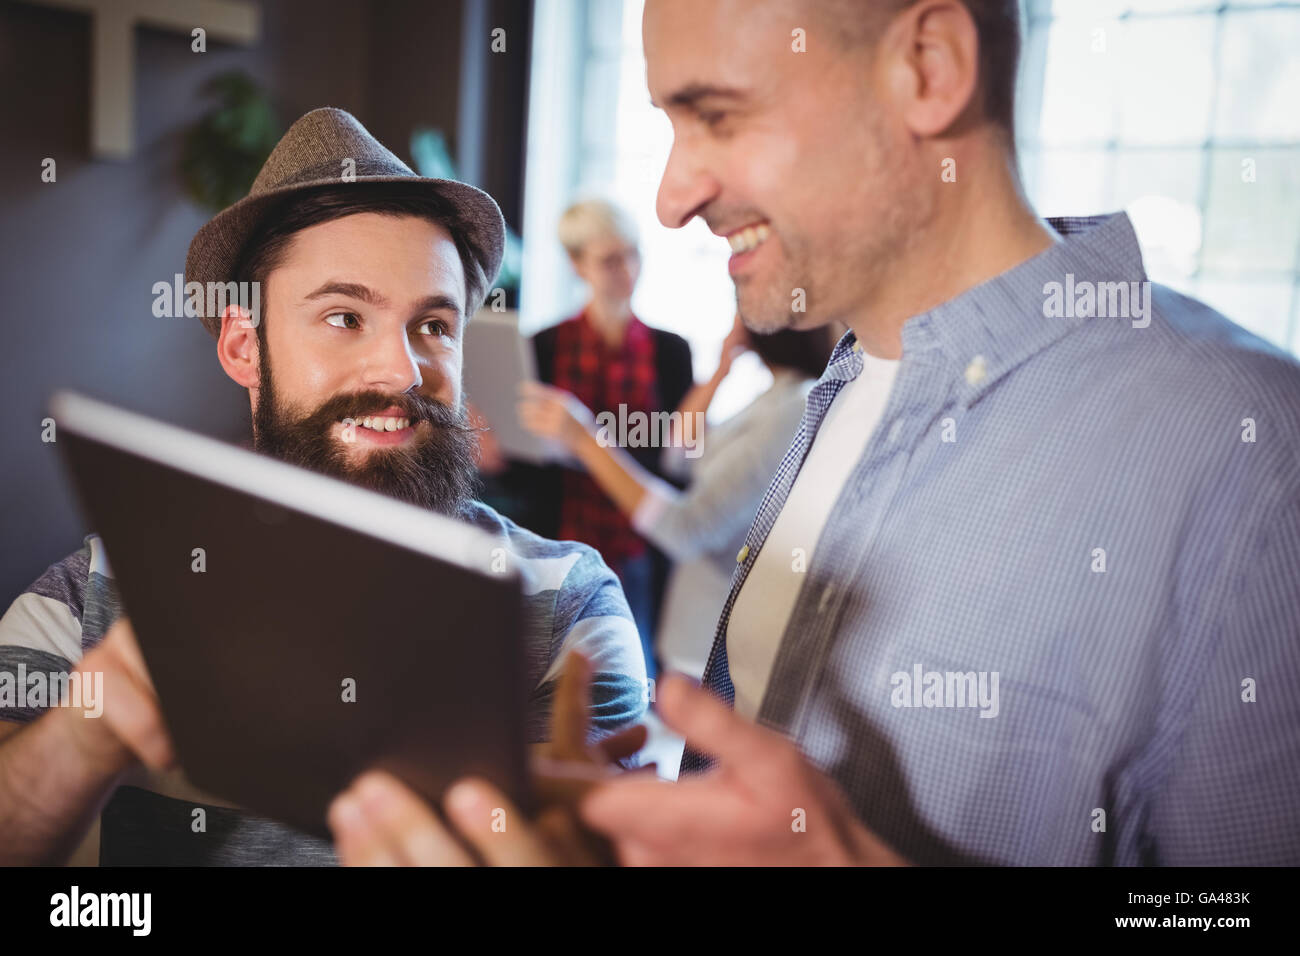 Heureux collègues hommes discutant sur tablette numérique Banque D'Images